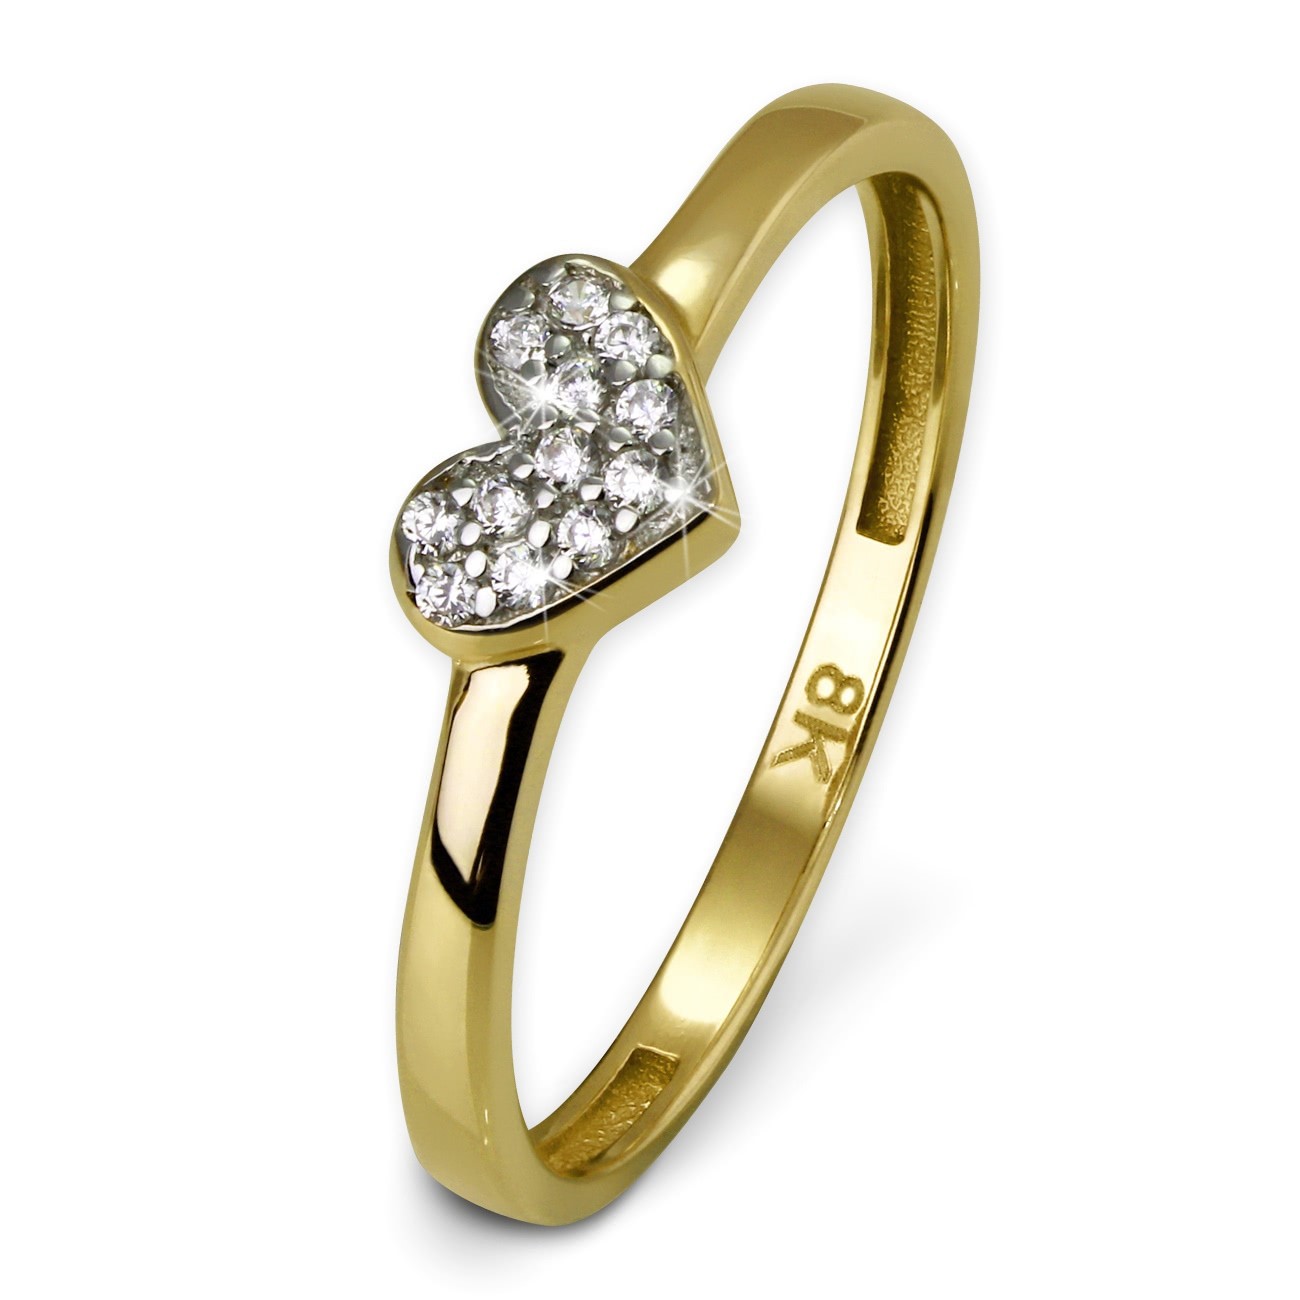 GoldDream Gold Ring Herz Zirkonia weiß Gr.54 333er Gelbgold GDR503Y54